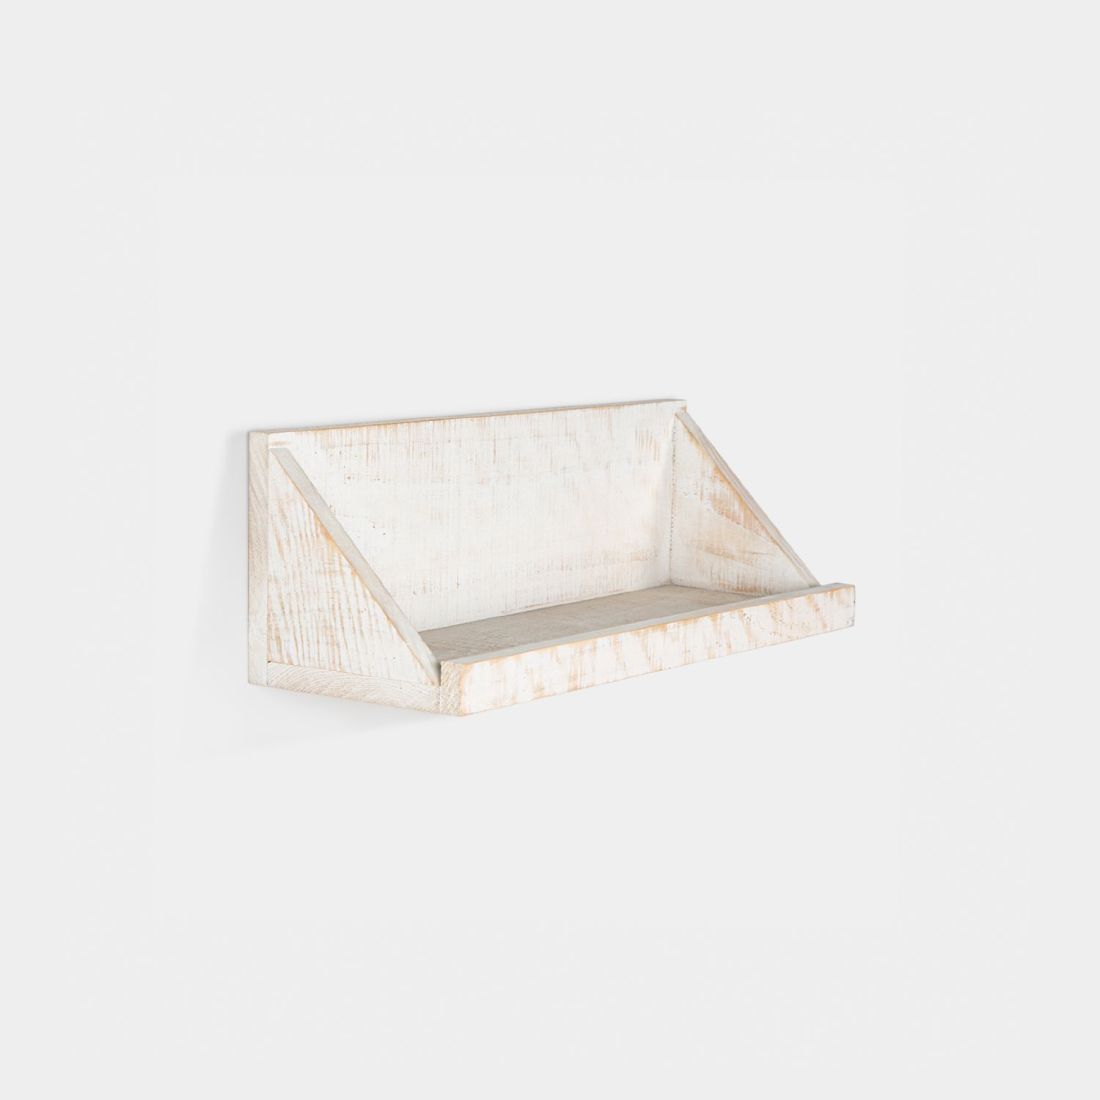 El estante rectangular Evan 45x45 cm fabricado en Madera reciclada representa con personalidad el upcycling